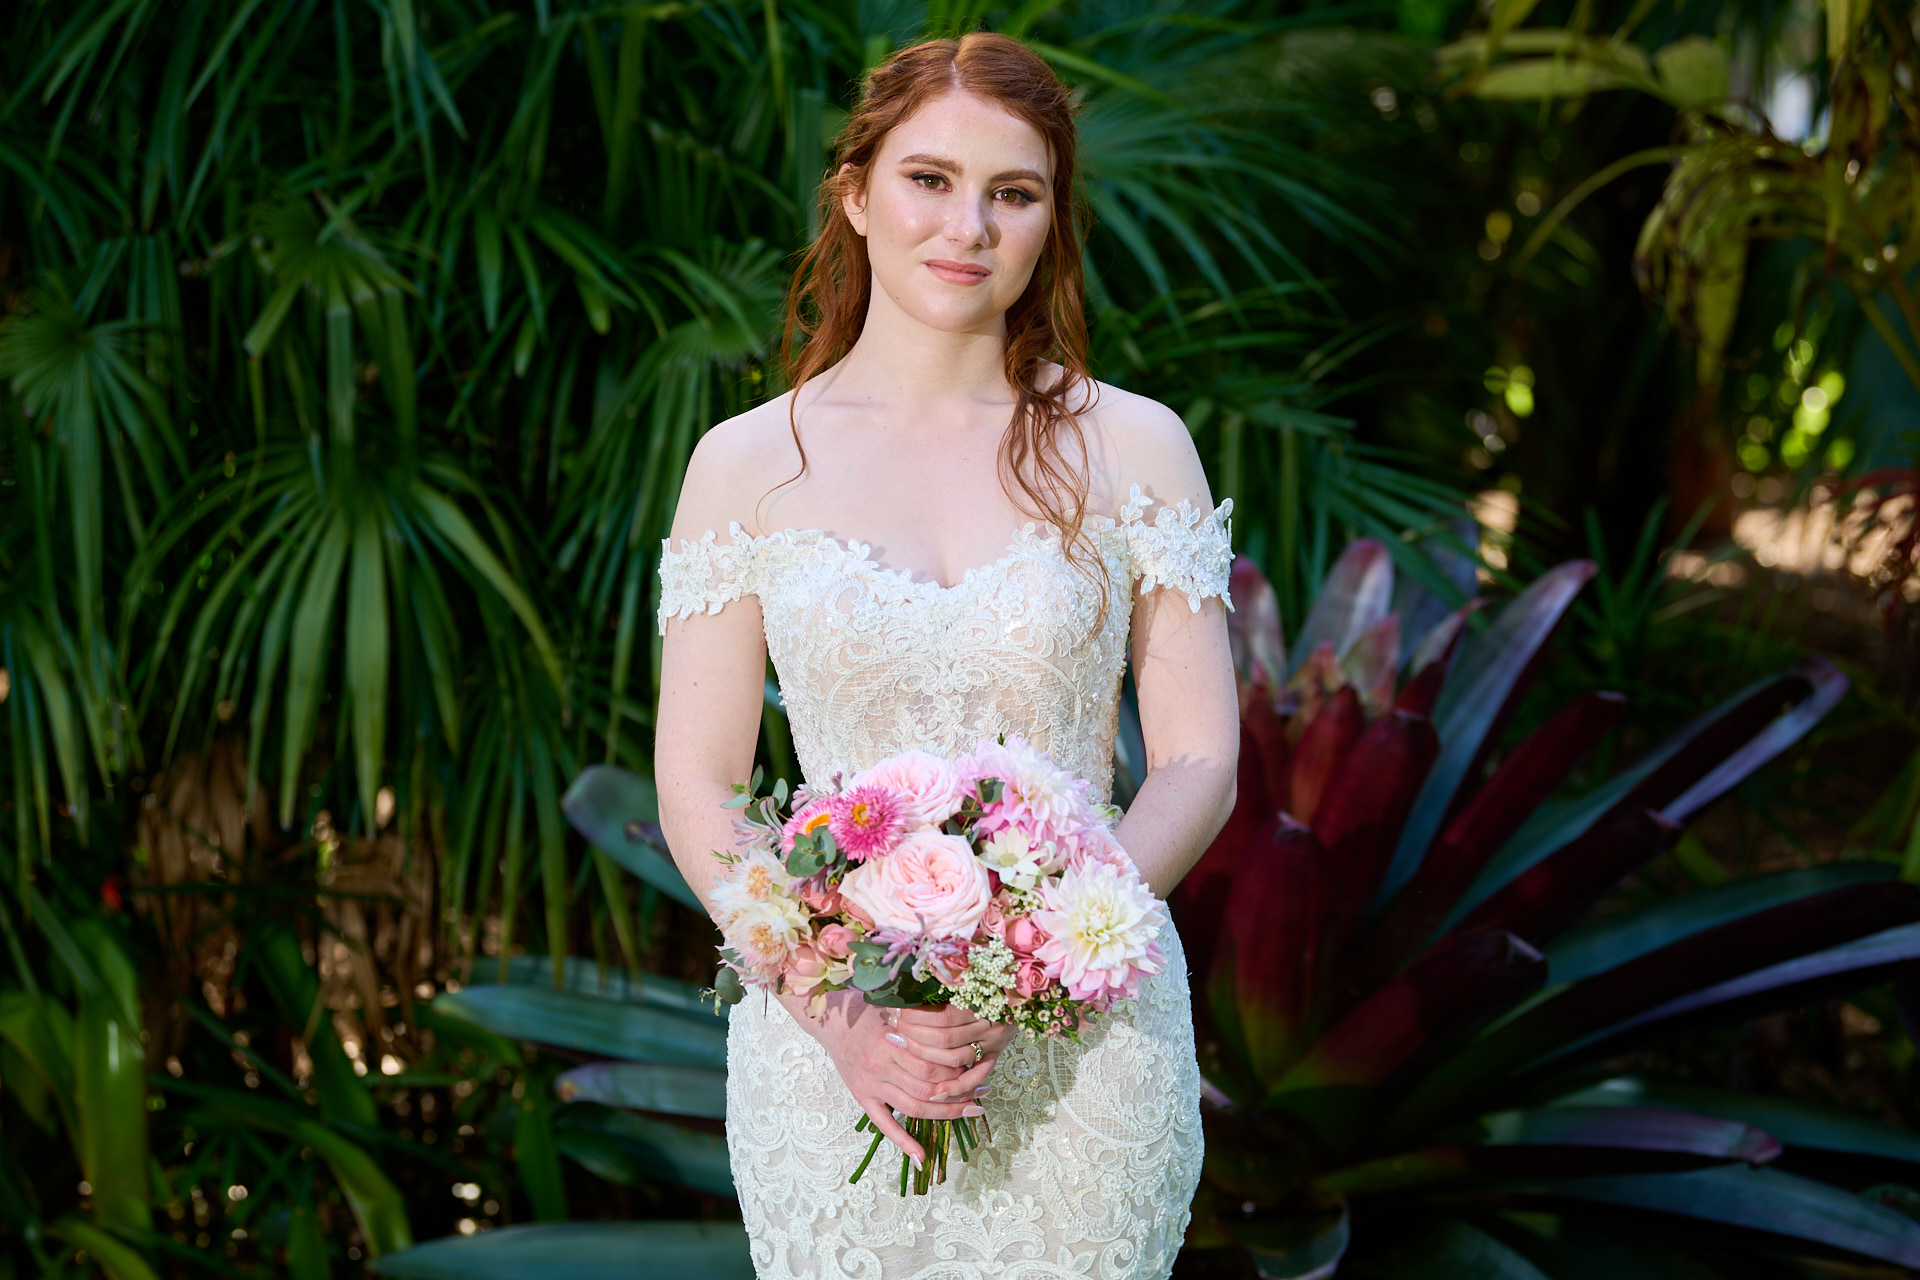 Bride at Royal Botanic Gardens, Sydney, Australia. By orlandosydney.com